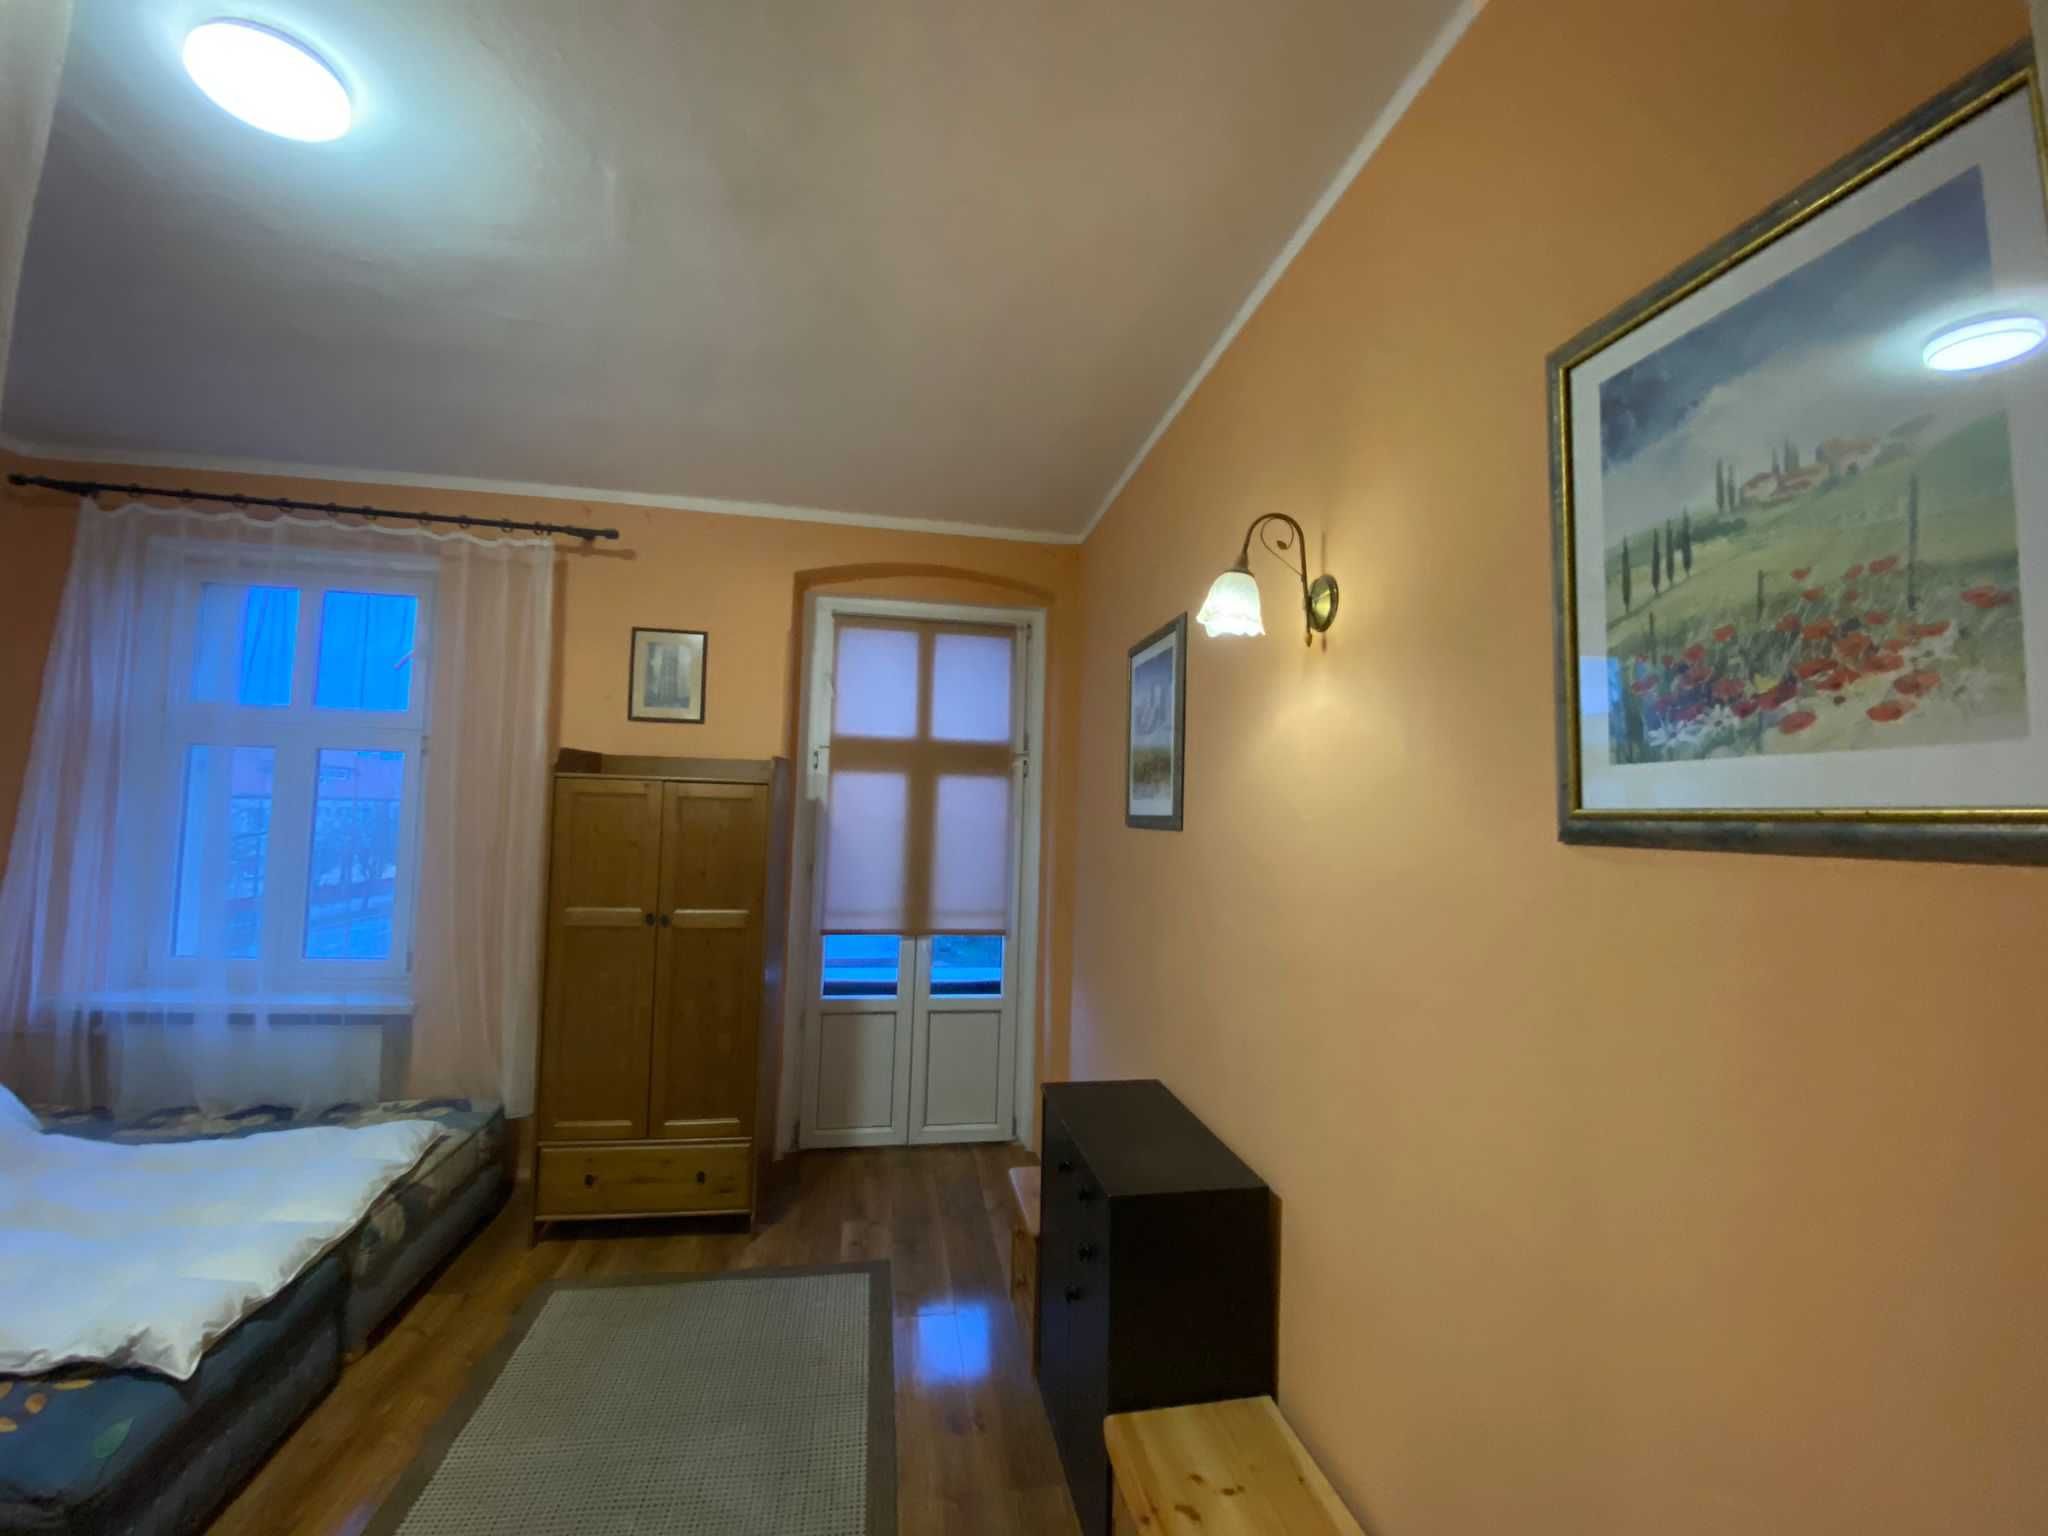 2 pokoje,kuchnia,łazienka w Dzierżoniów,gotowe ul. Bat Chłopskich 22